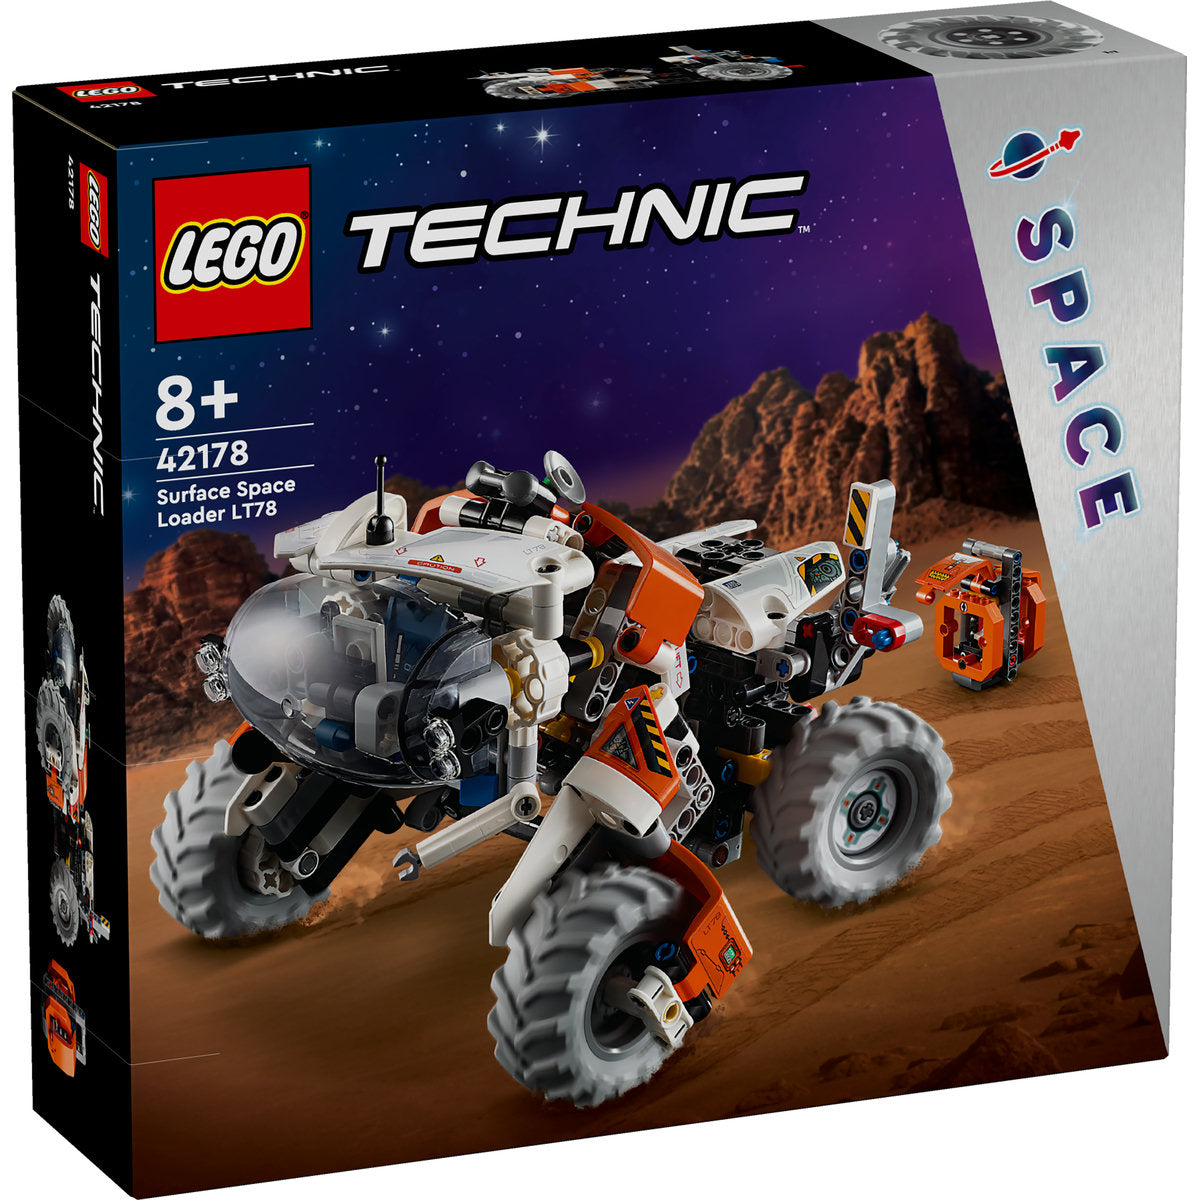 SPACE LOADER DE SUPRAFATA LT78 - LEGO TECHNIC - LEGO (42178) - Libelula Vesela - Jucarii